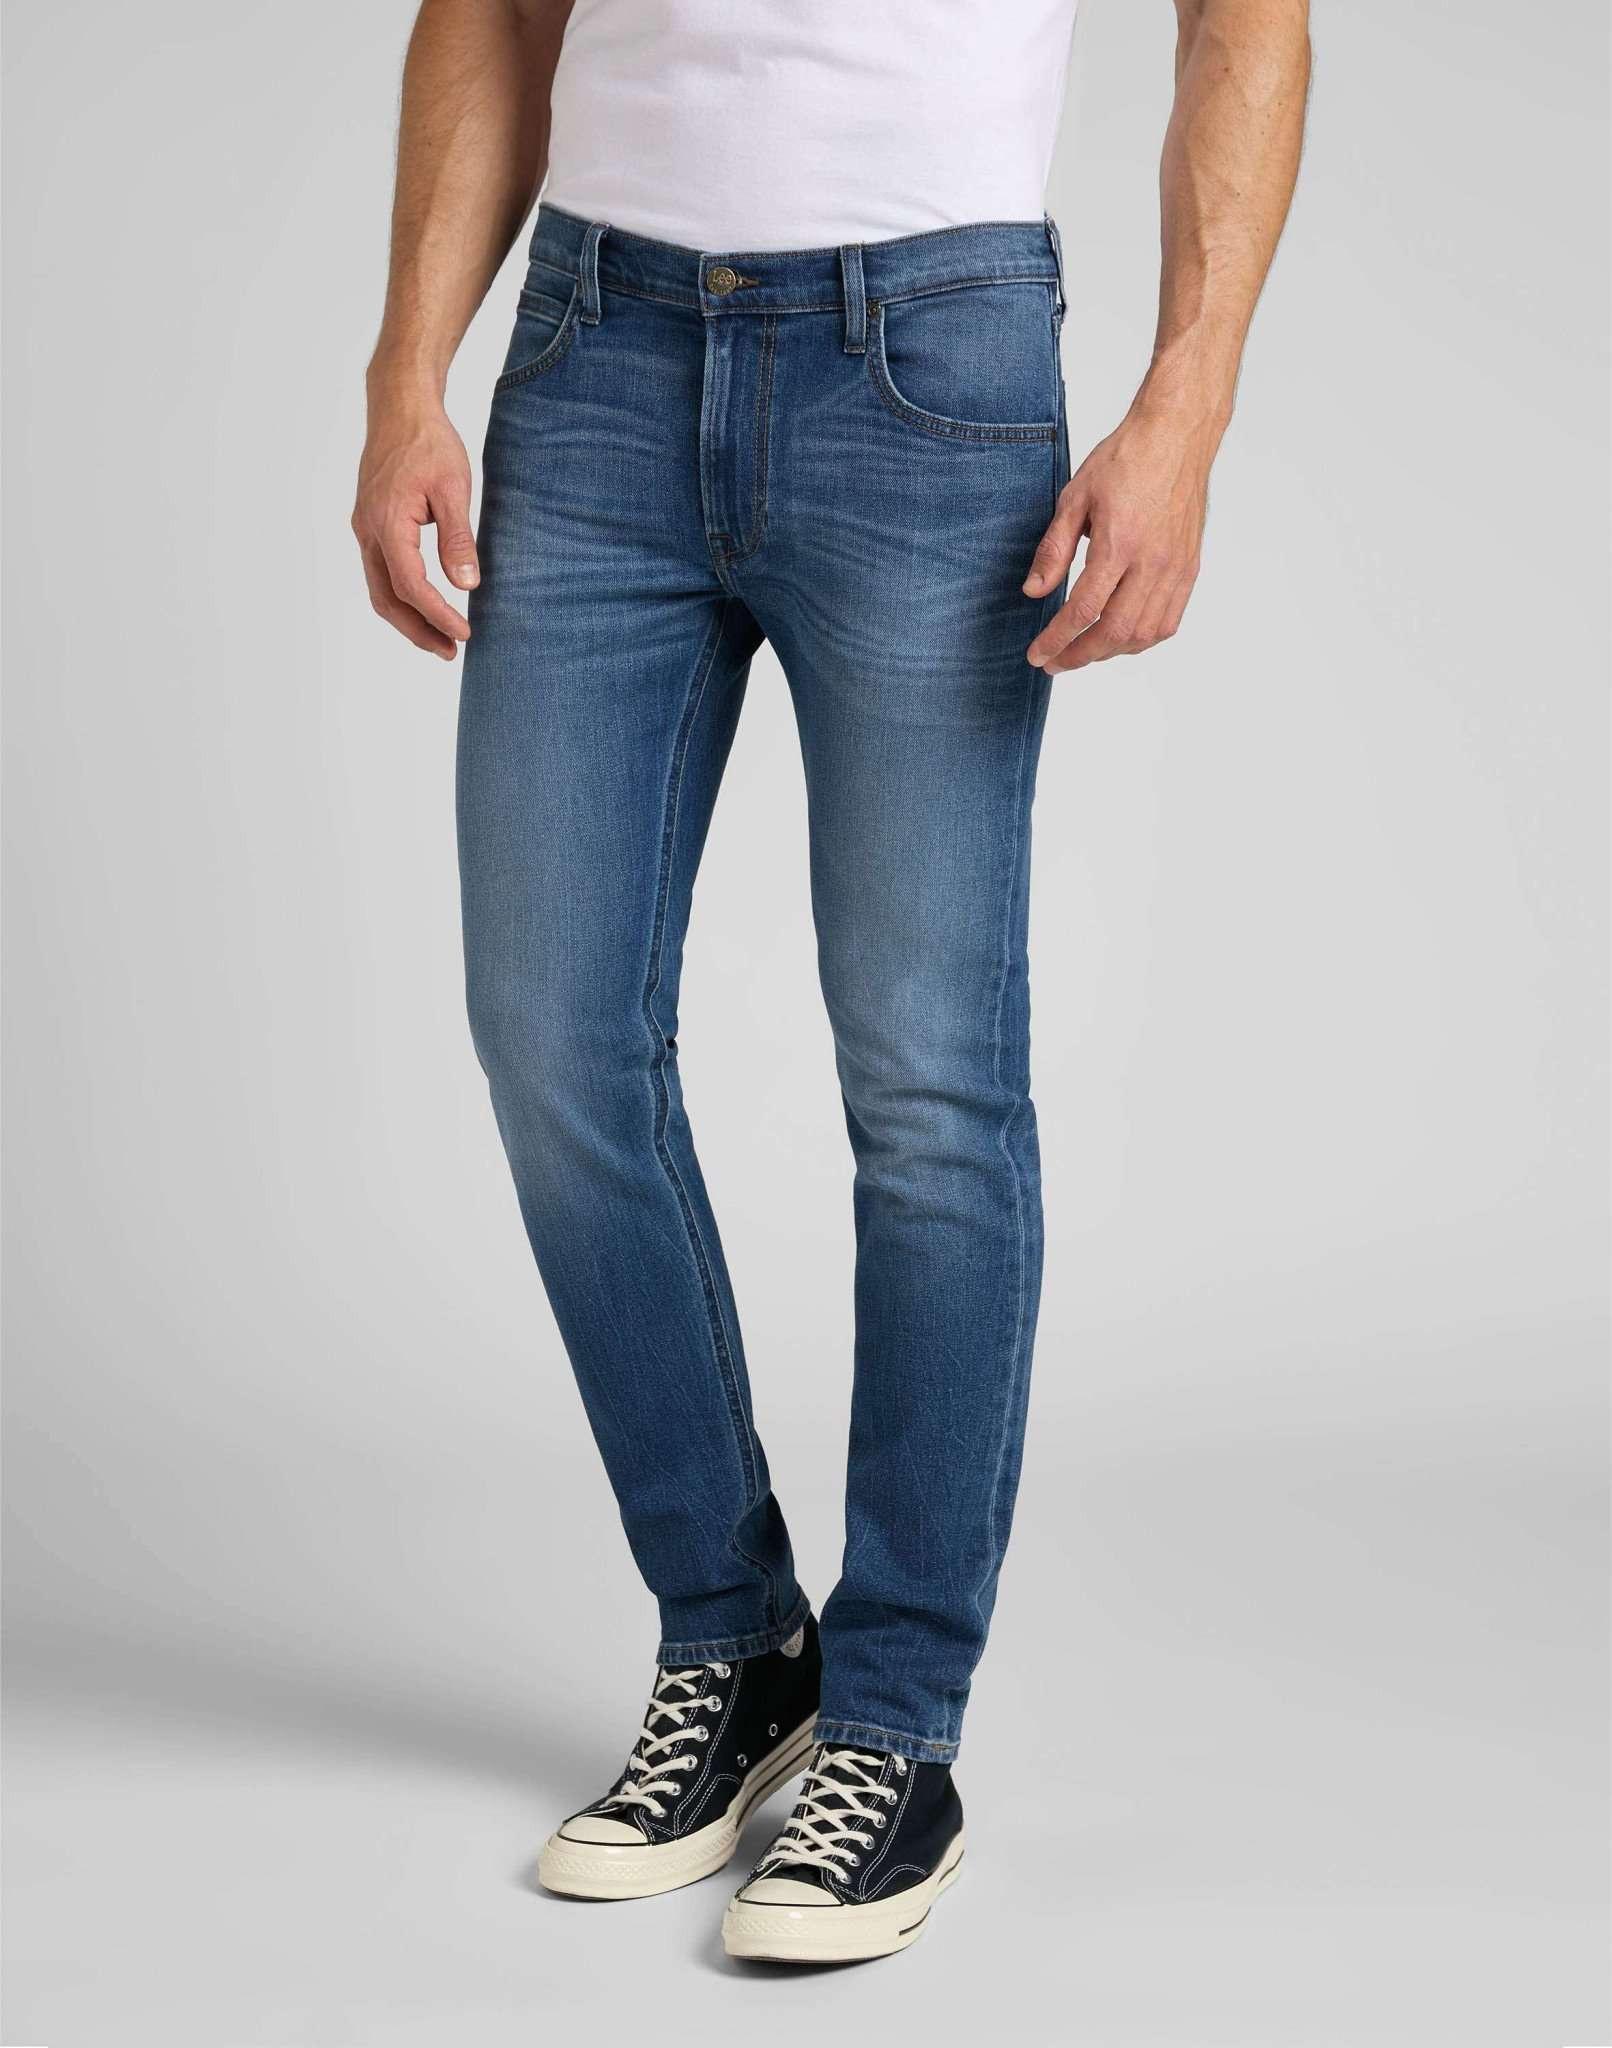 Jeans Slim Fit Luke Herren Blau Denim L32/W31 von Lee